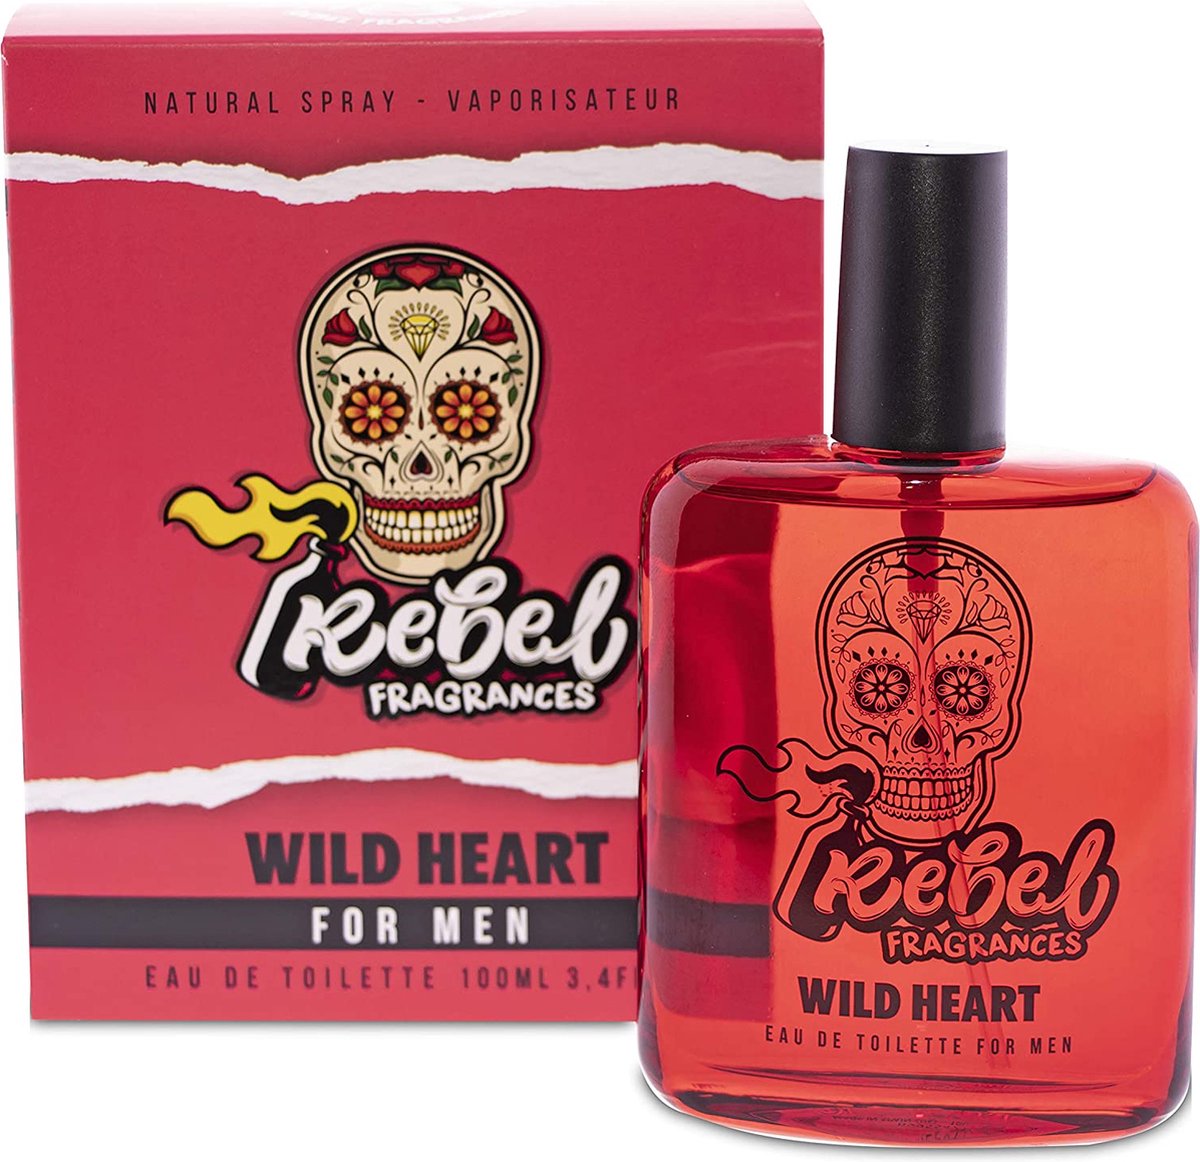 Rebel Fragrances Wild Heart Eau De Toilette Mannen - 100 ml - Mannen Parfum - Mannen Cadeautjes - Verleidelijk en Intrigerend Herengeur